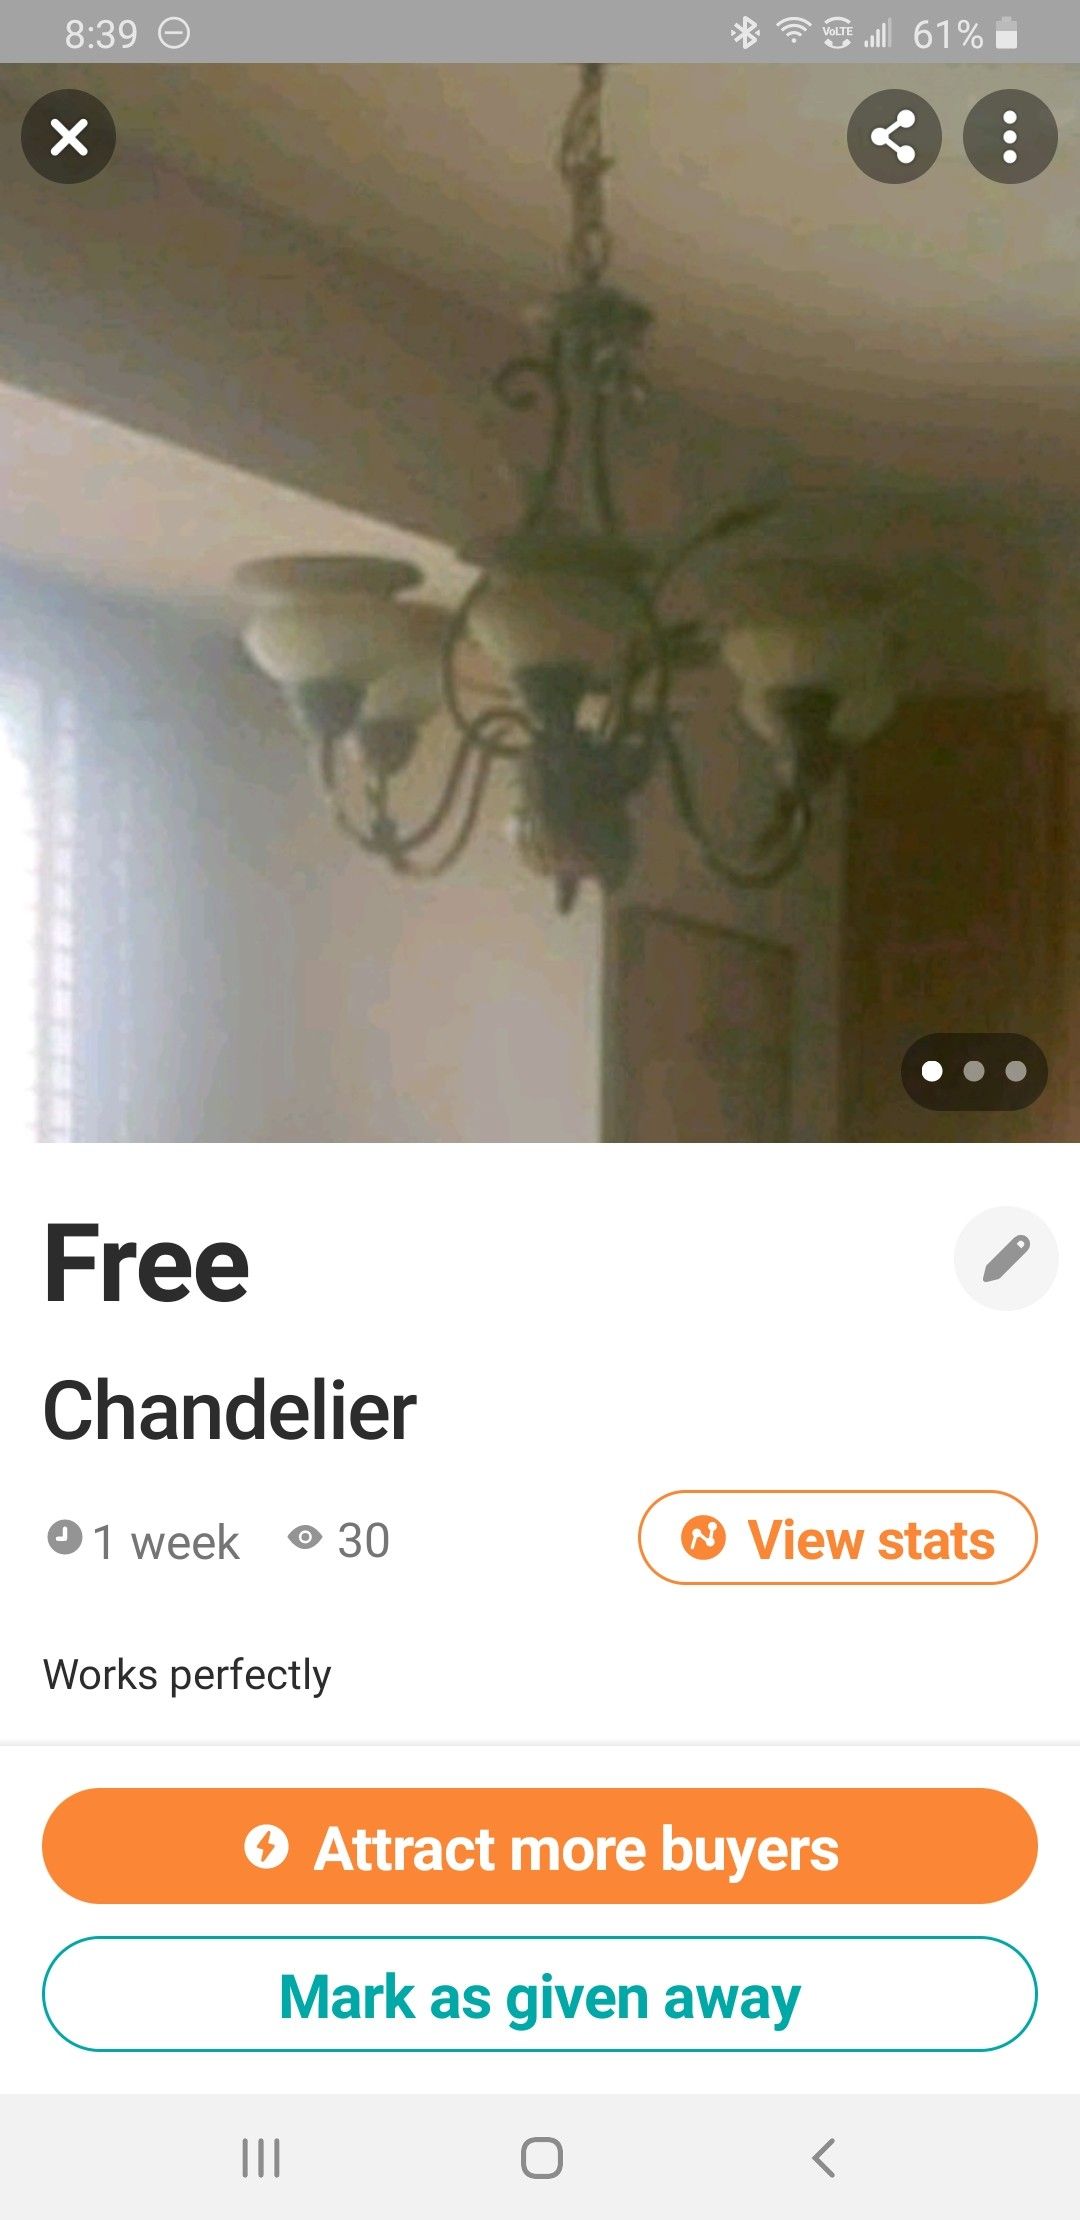 Free Chandelier